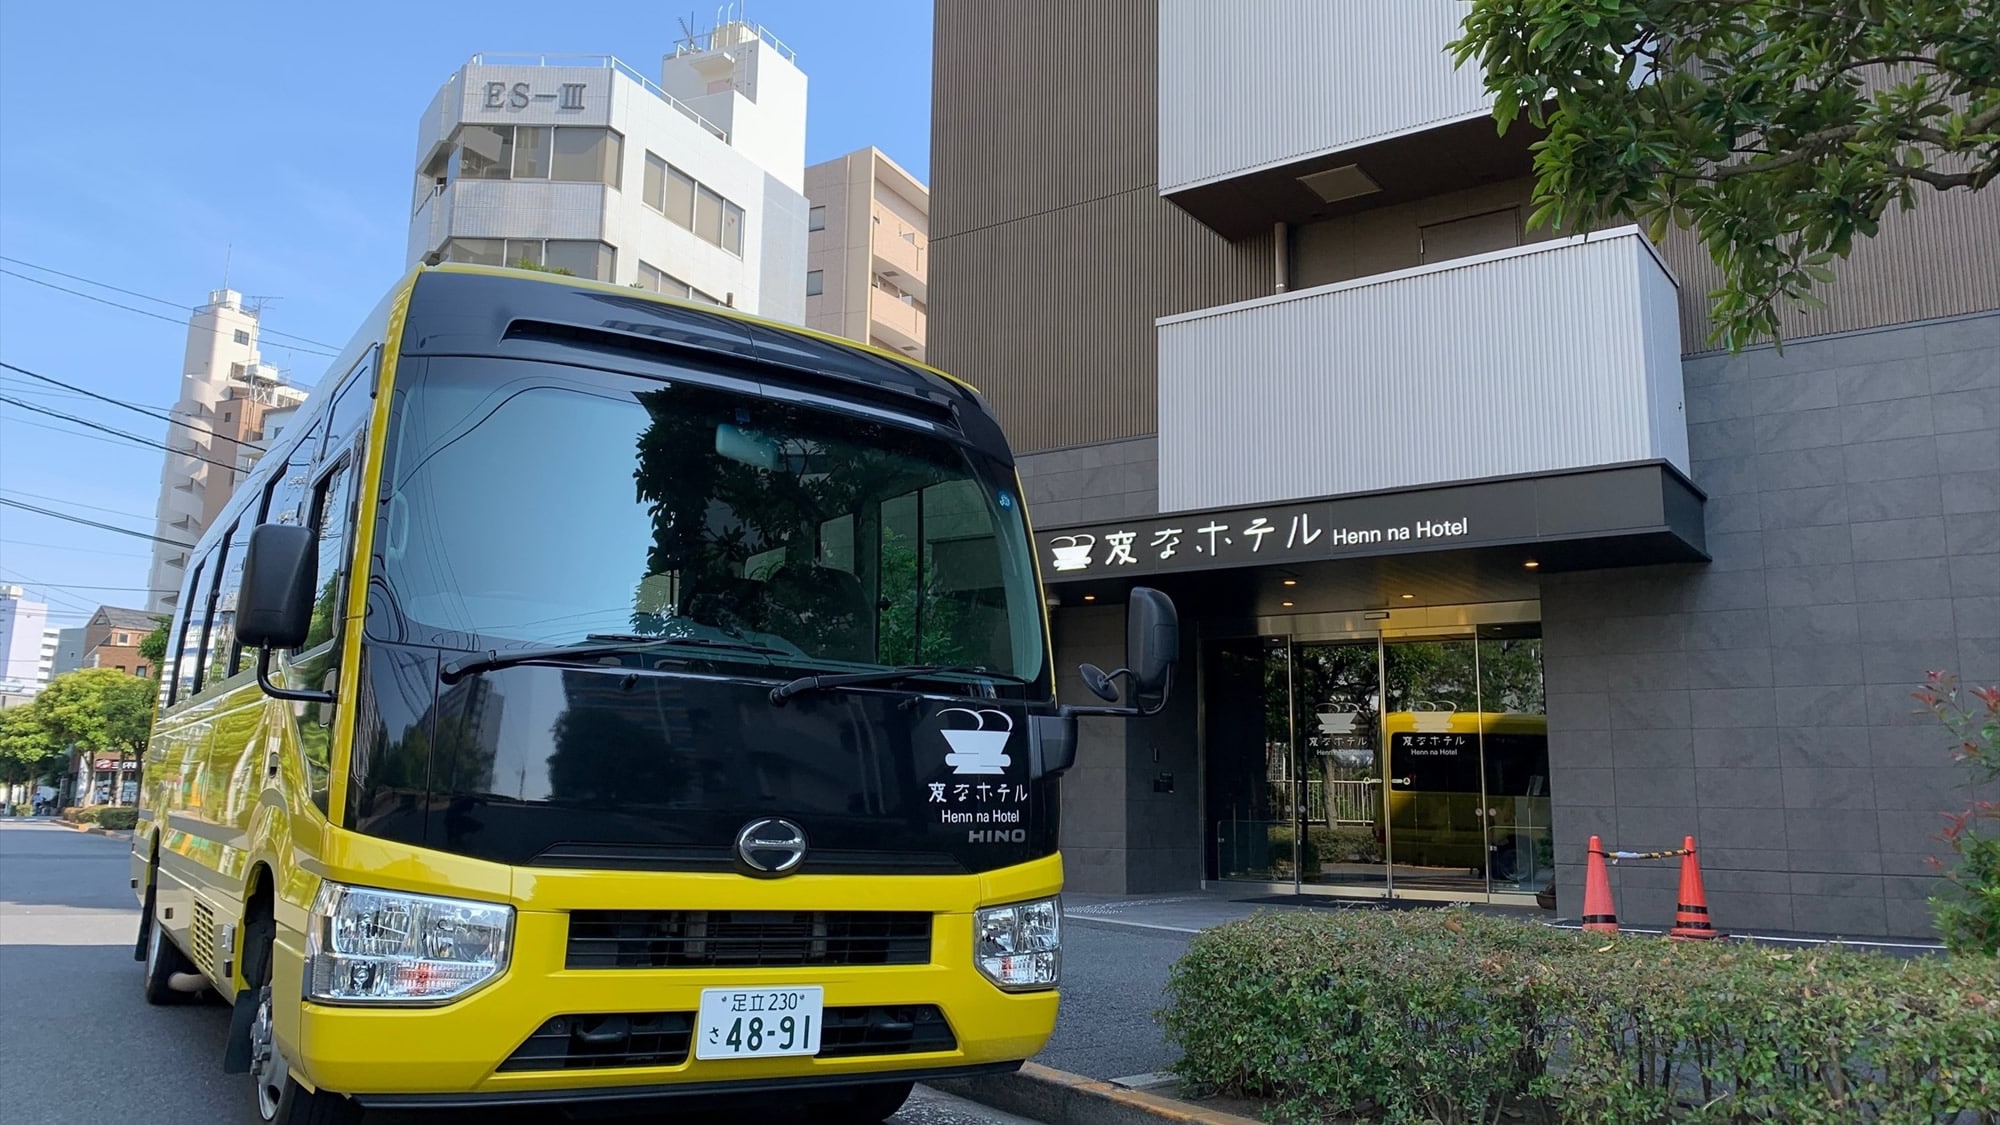 도쿄 디즈니 리조트 방면(약 30분)에의 무료 송영 버스를 매일 운행!